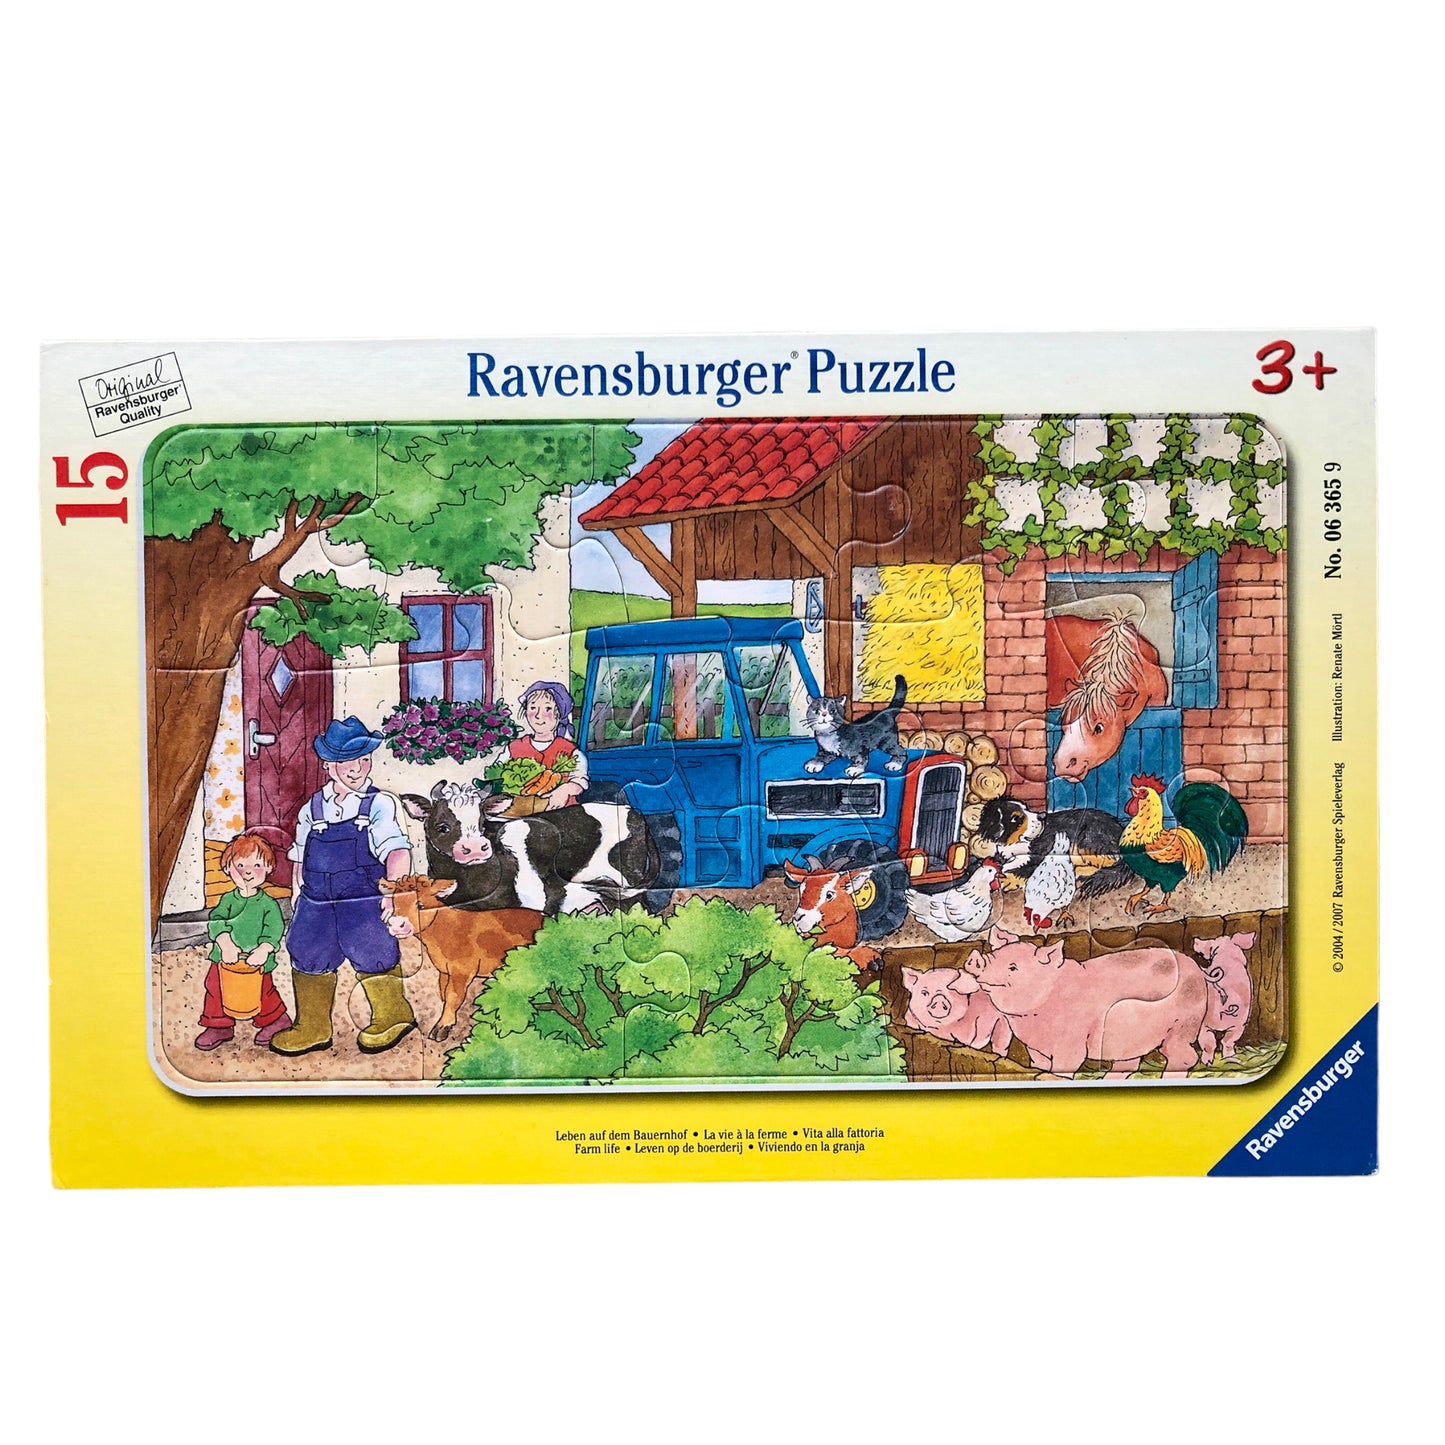 Ravensburger Puzzle - Farm life - 15 pieces